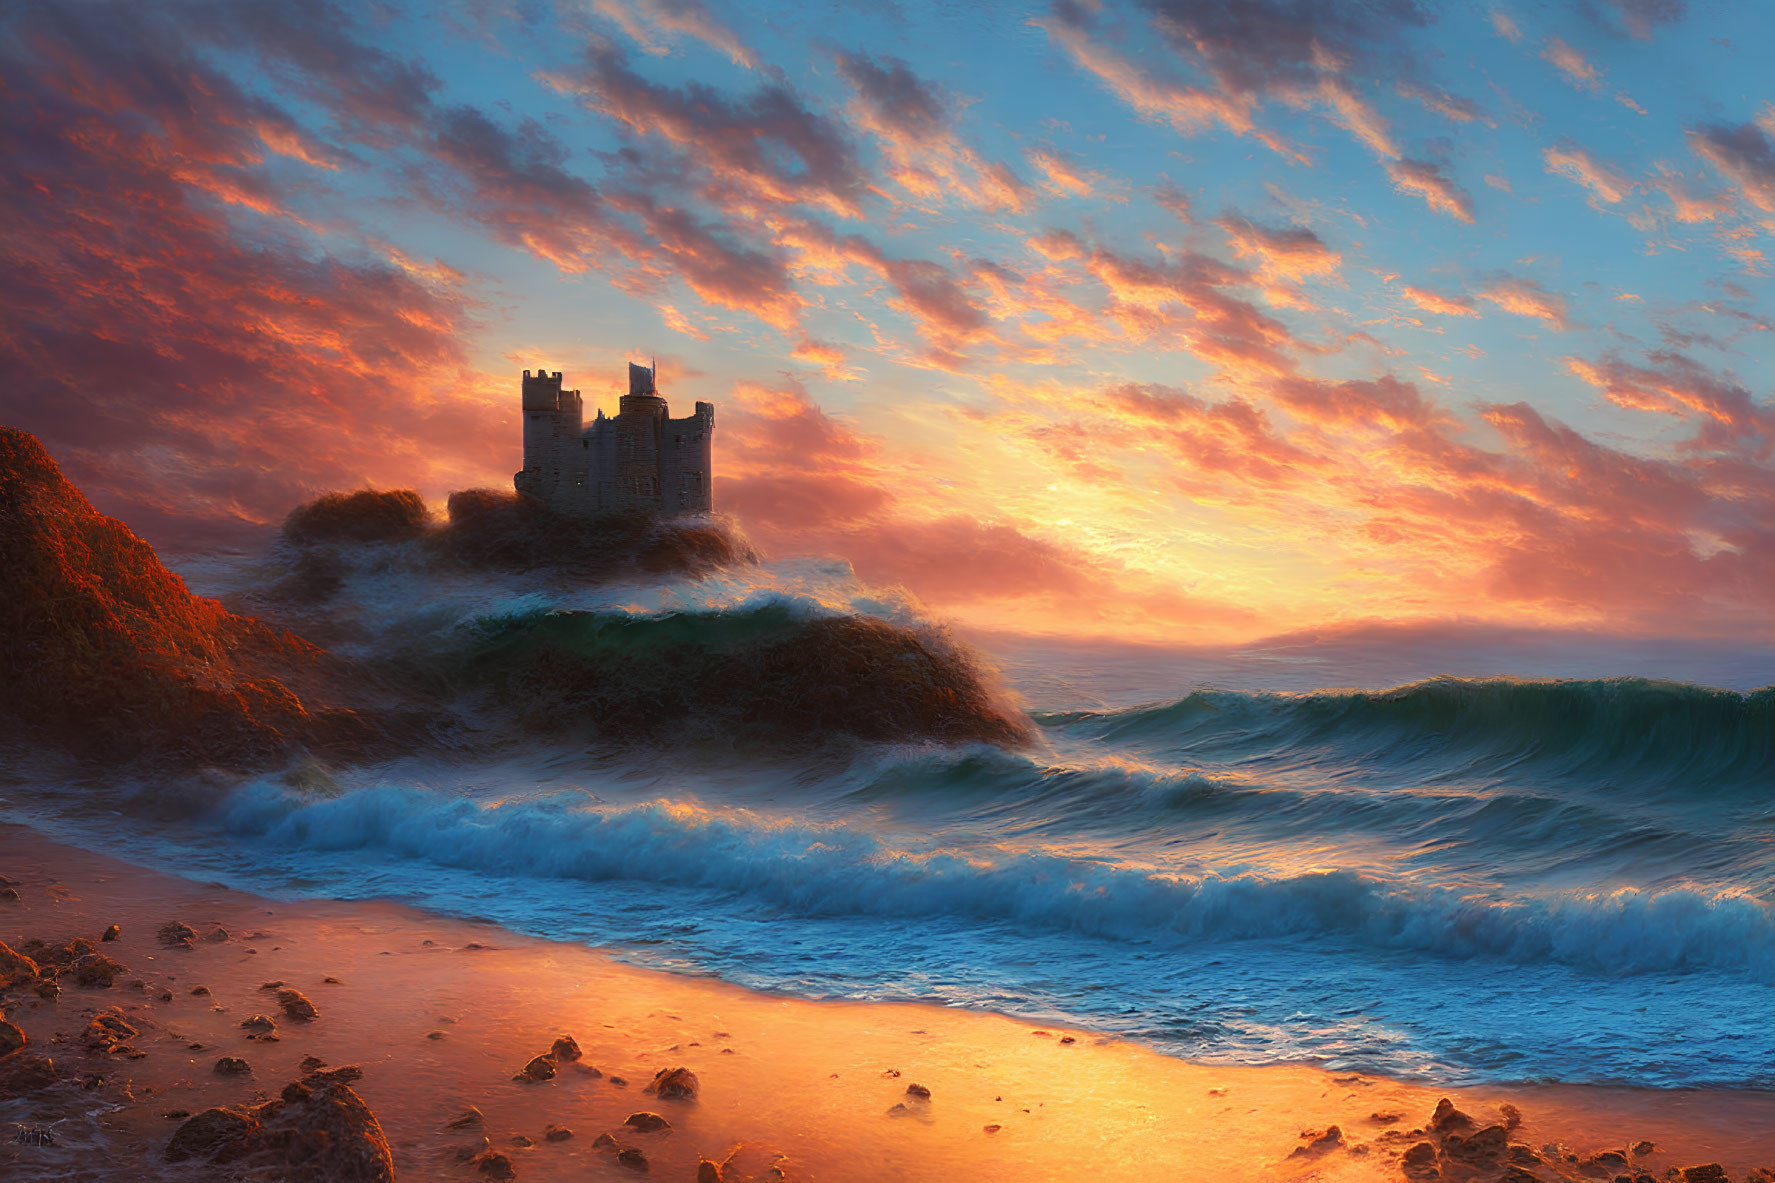 Seaside cliff castle under vibrant sunset sky